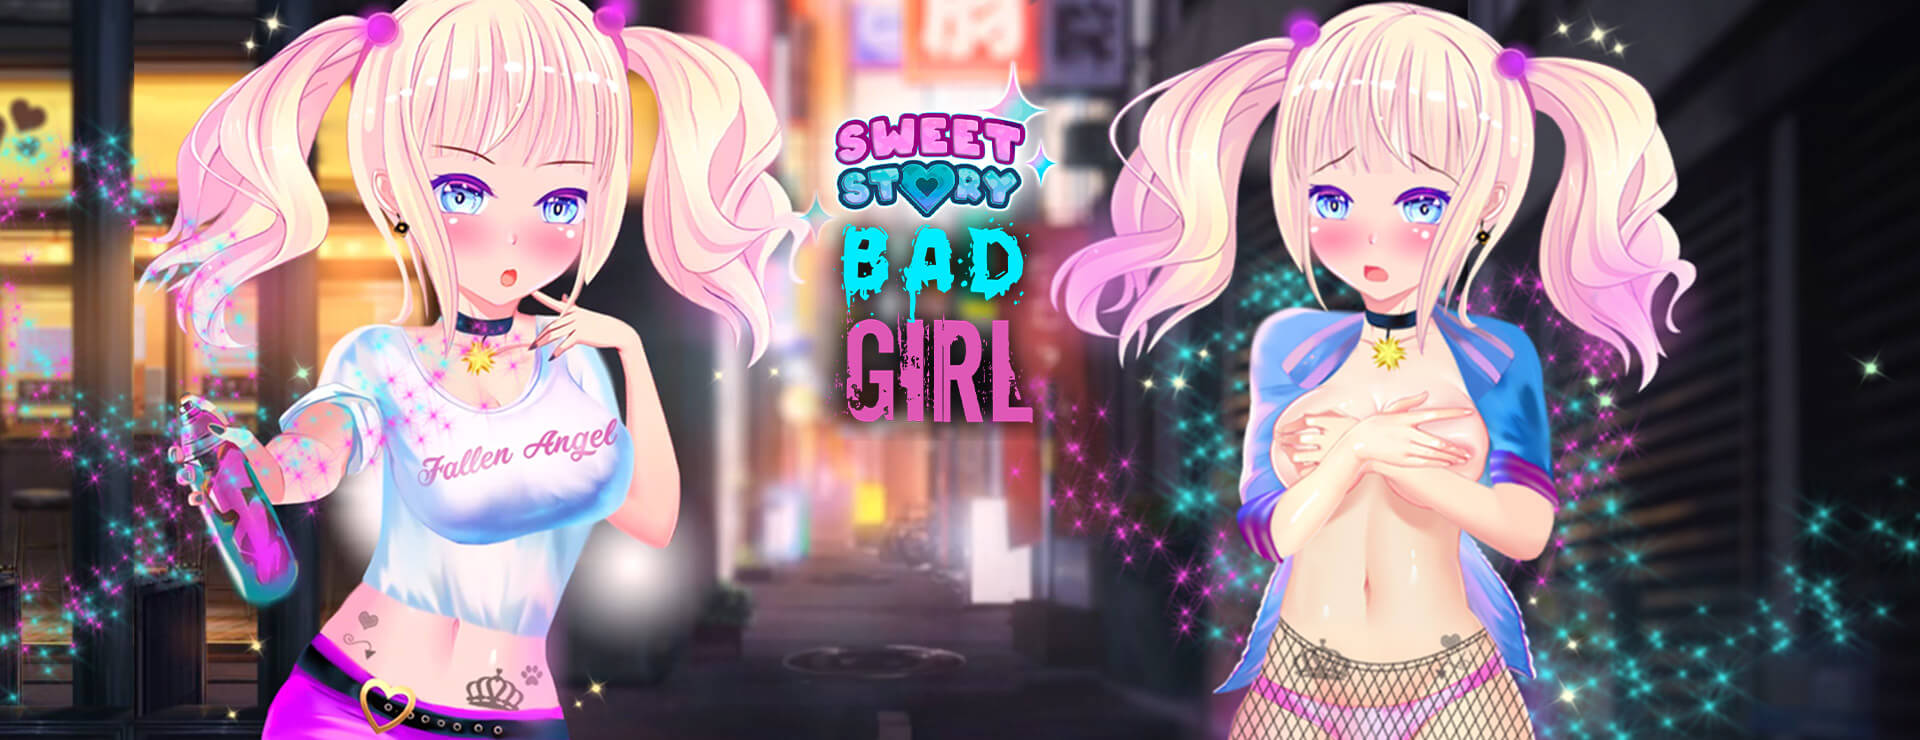 Sweet Story Bad Girl - Łatwe Gra